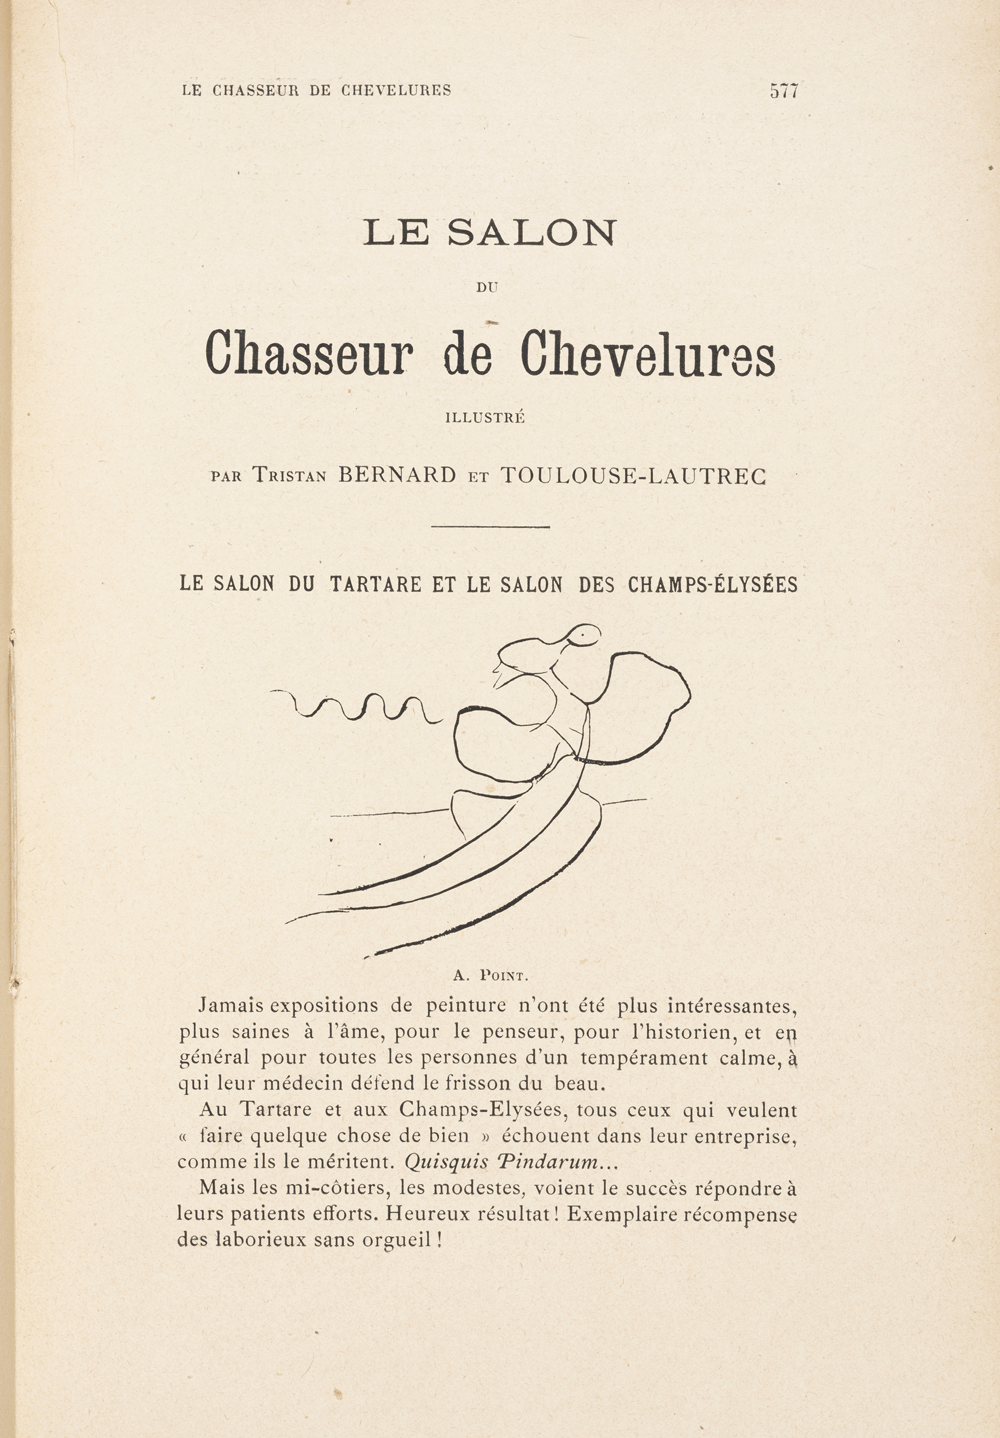 Tristan Bernard et Toulouse-Lautrec, « Le salon du chasseur de chevelures illustré », La Revue blanche, 1889-1903